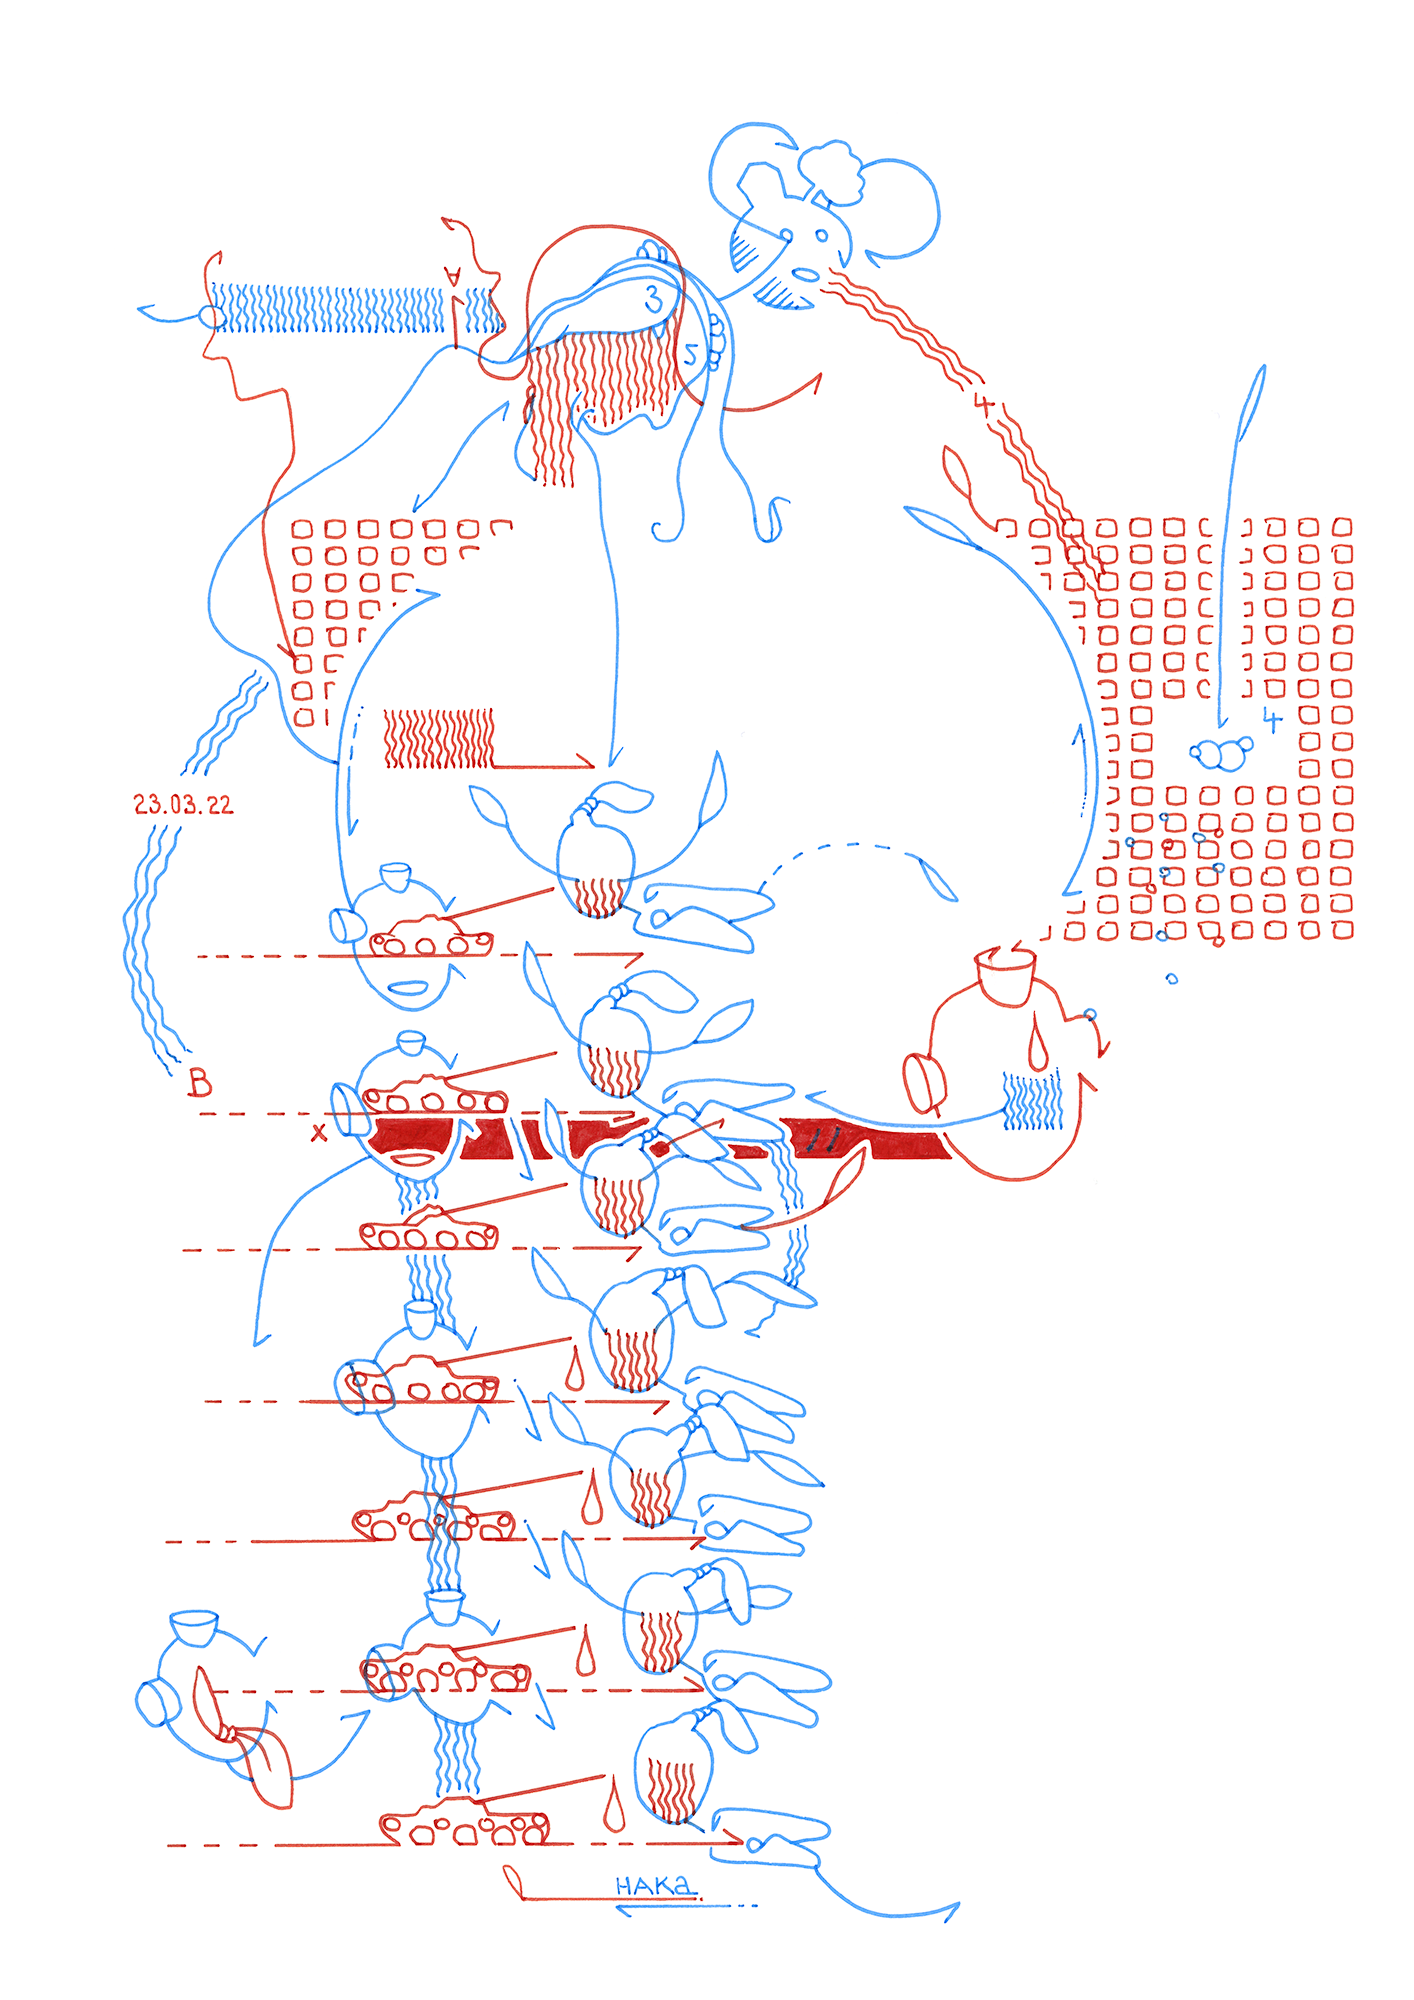 Hannes Kater: Tageszeichnung (Zeichnung/drawing) vom 23.03.2022 (1414 x 2000 Pixel)